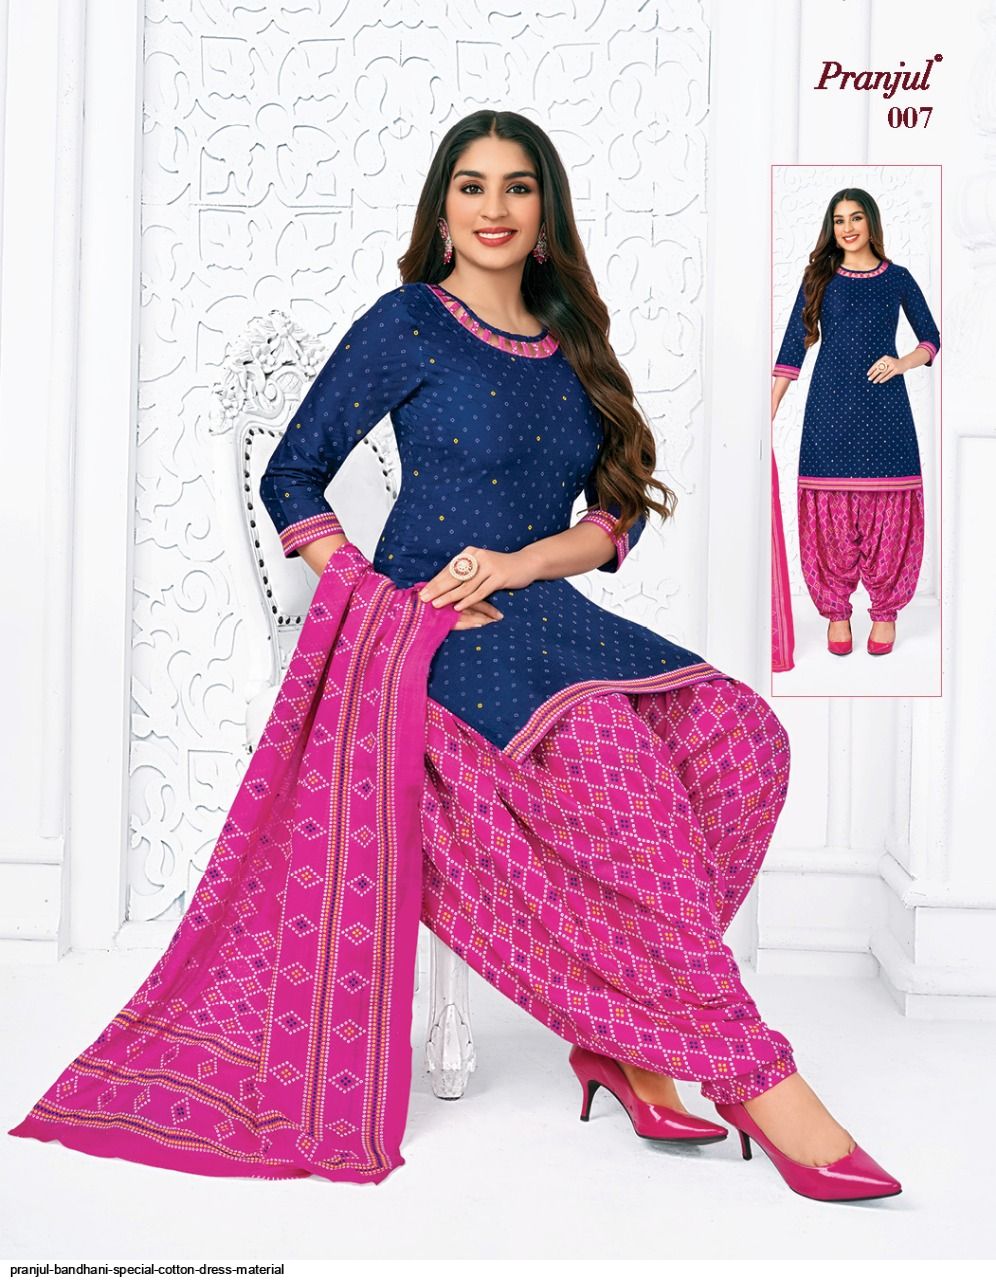 pranjul bandhani special cotton dress material 4709